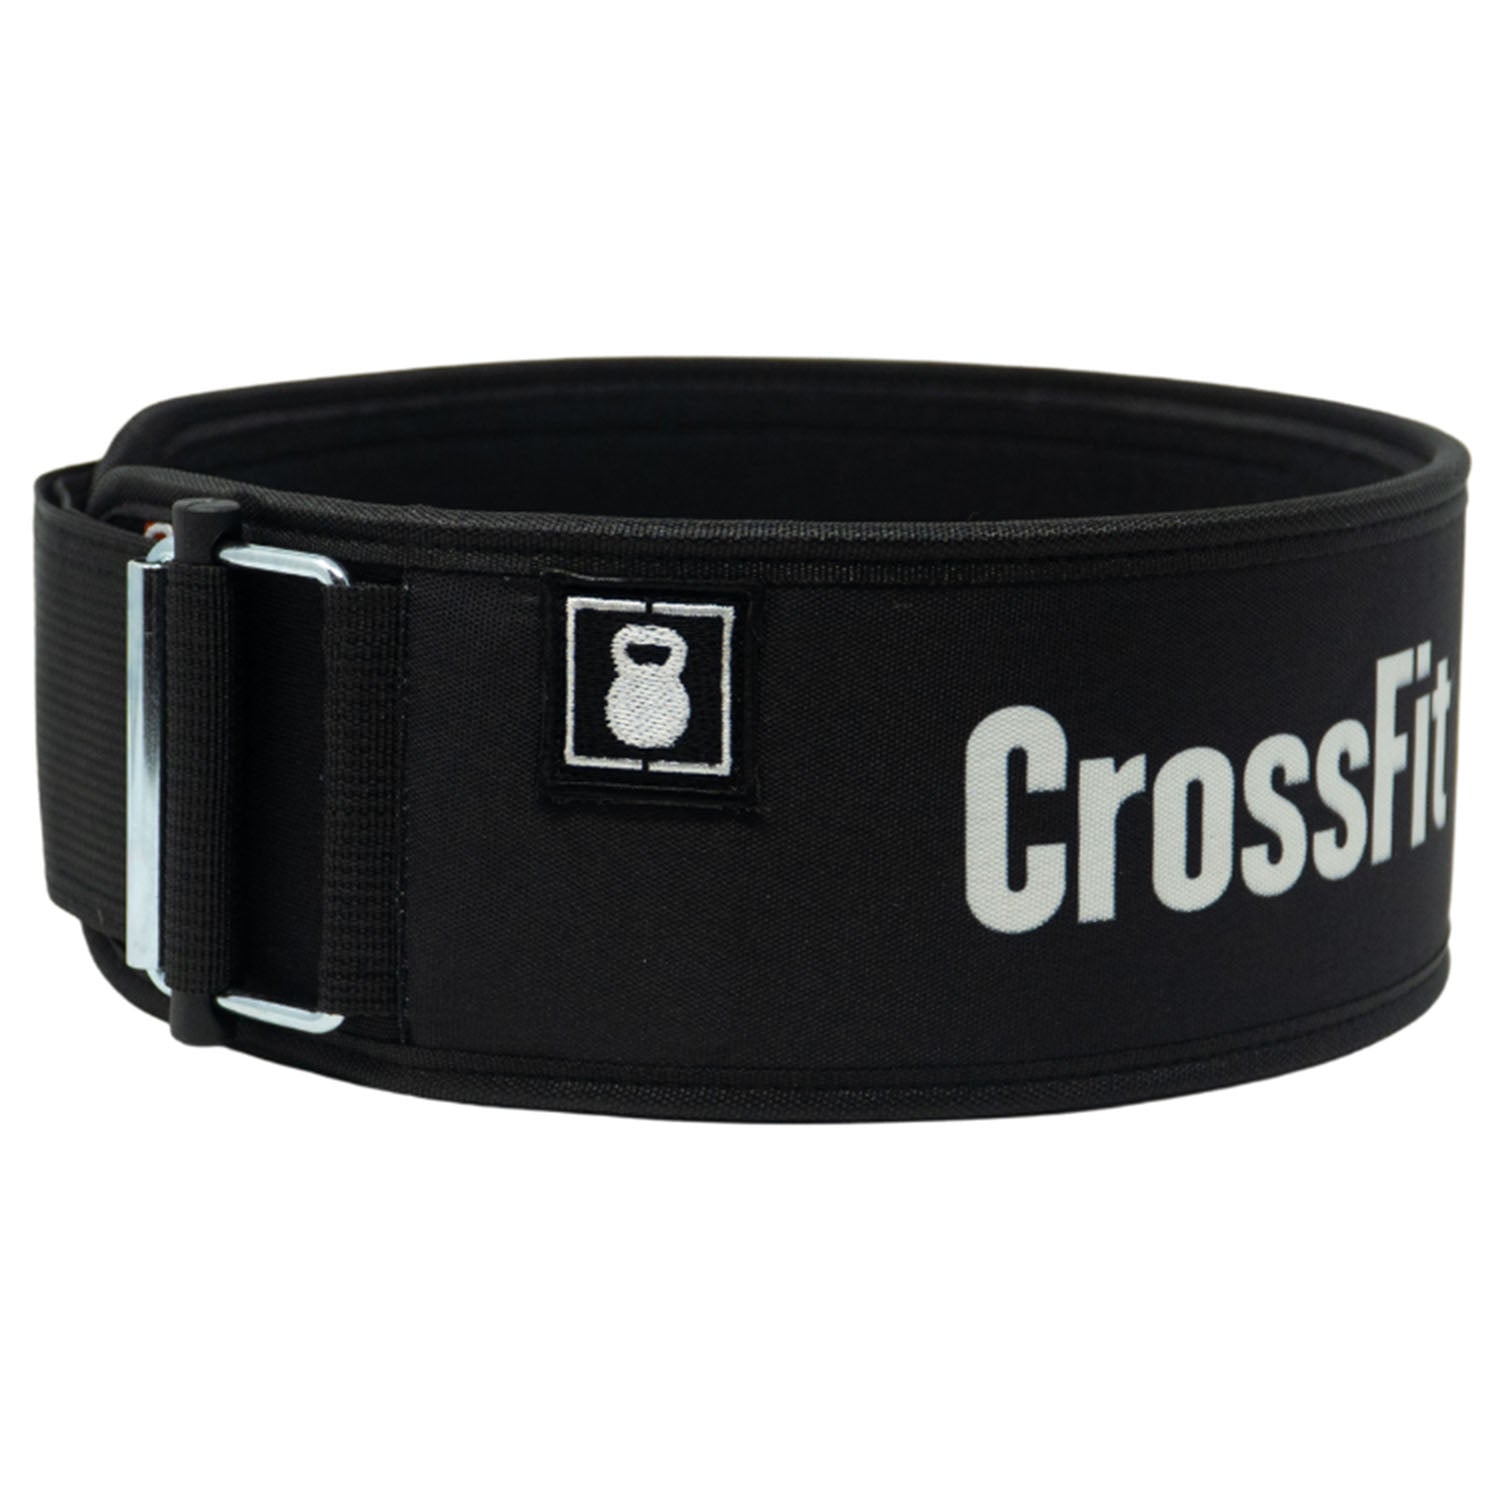 CrossFit Black Weightlifting Belt - side view